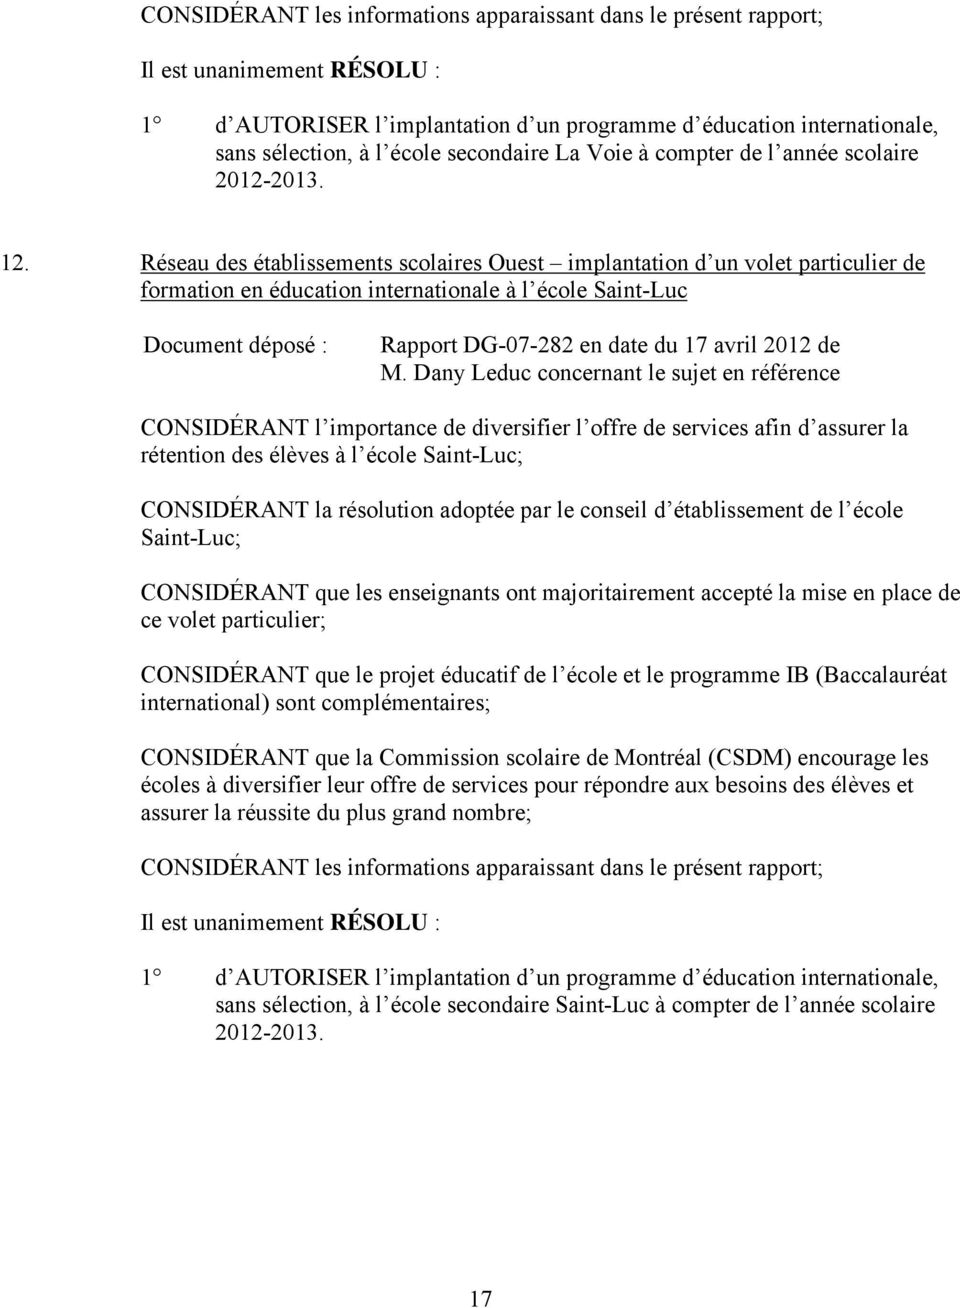 Réseau des établissements scolaires Ouest implantation d un volet particulier de formation en éducation internationale à l école Saint-Luc Rapport DG-07-282 en date du 17 avril 2012 de M.